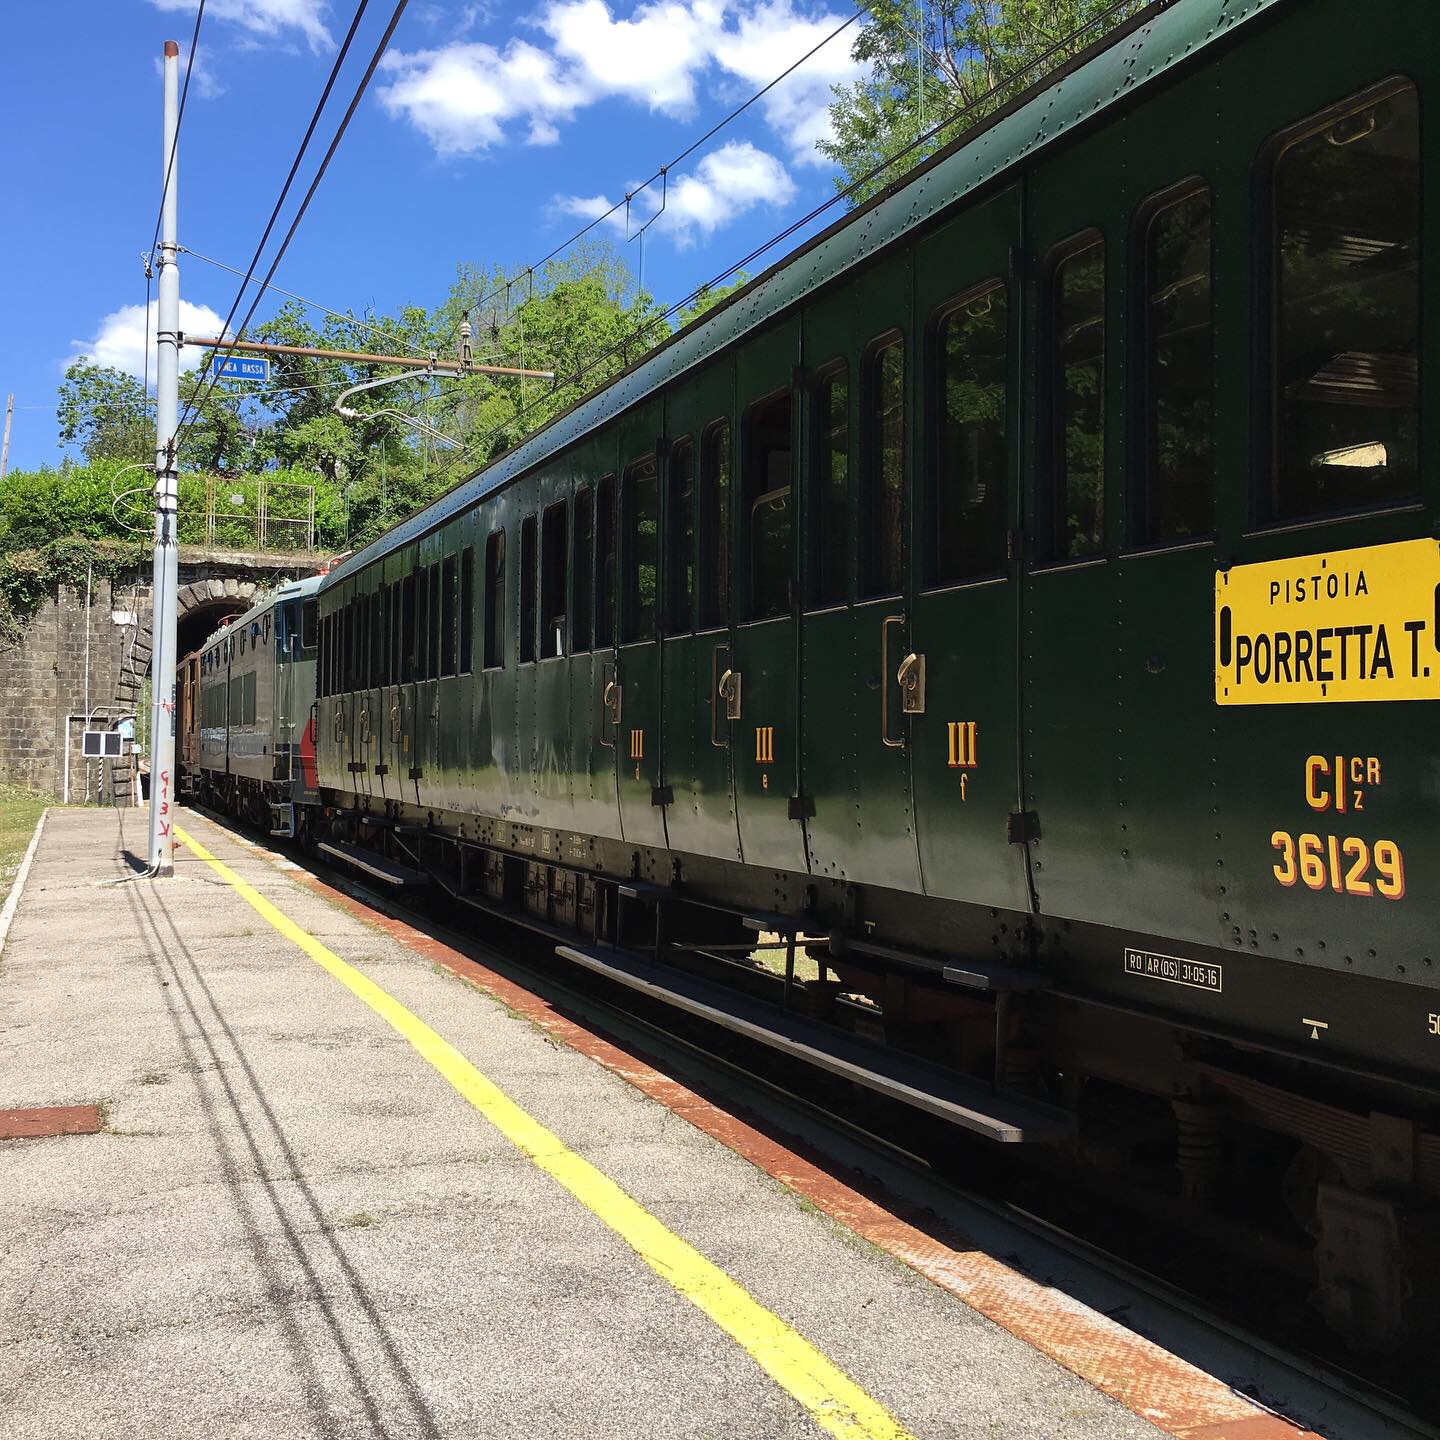 Porrettana Express, un voyage le long de voies ferrées historiques